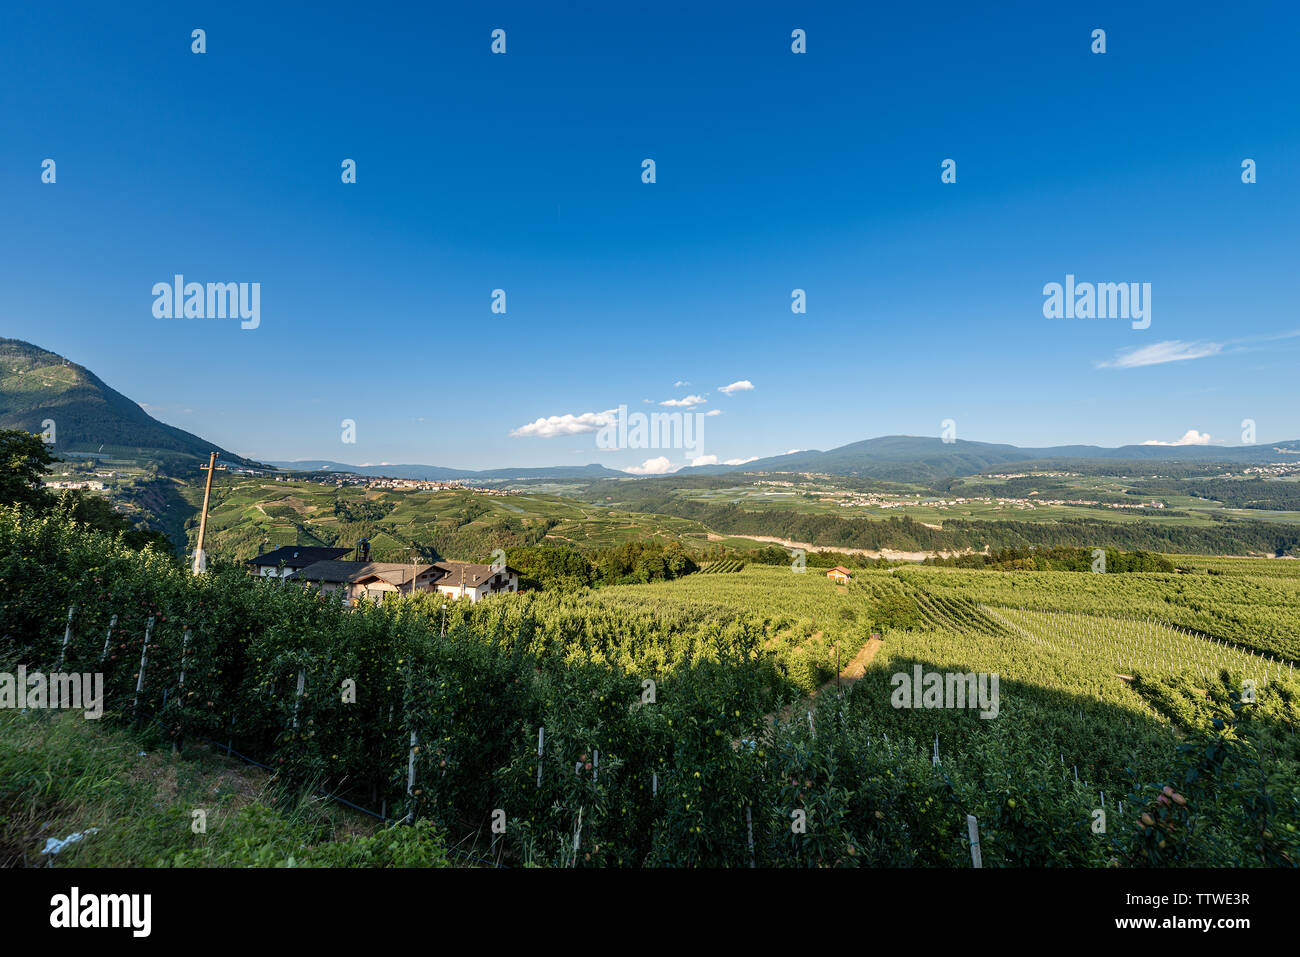 Val di Non (Val di Non) con frutteti e vigneti nei pressi di Cles. Trentino Alto Adige, Nord Italia, Europa Foto Stock